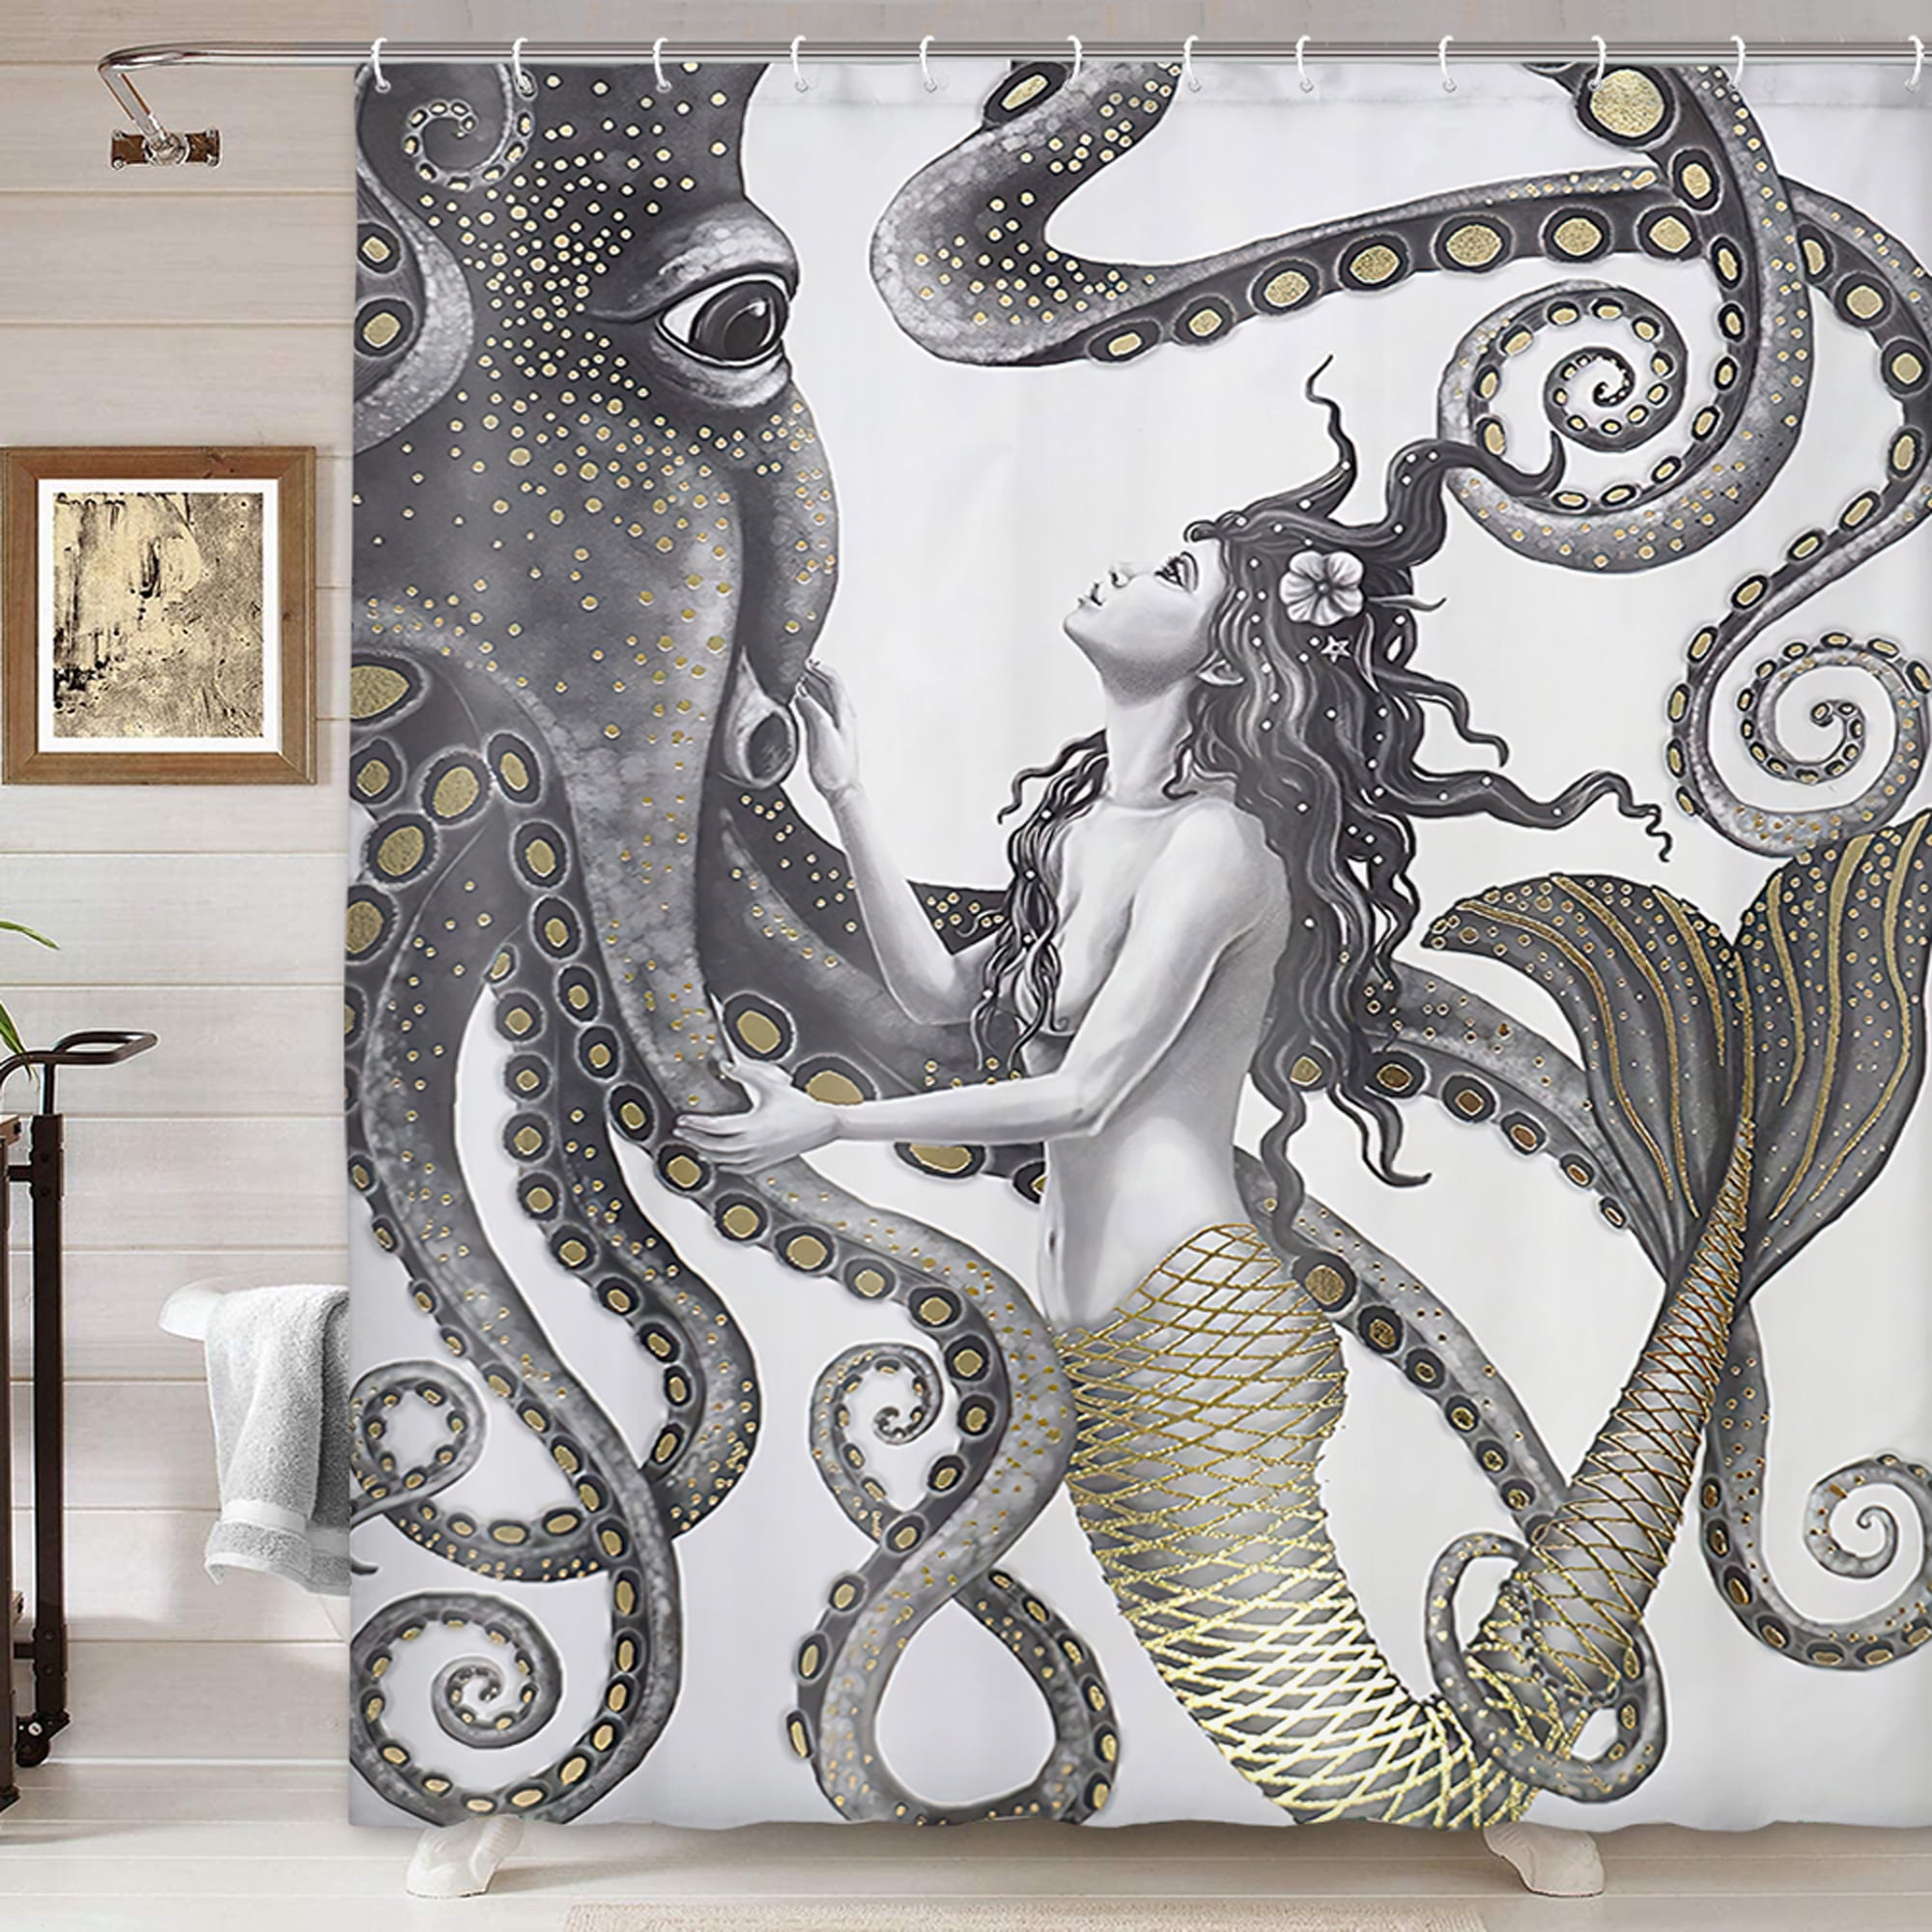 Mermaid with Long Hair Ocean Wild Animals Waterproof Shower Curtain Rugs&12 Hook 